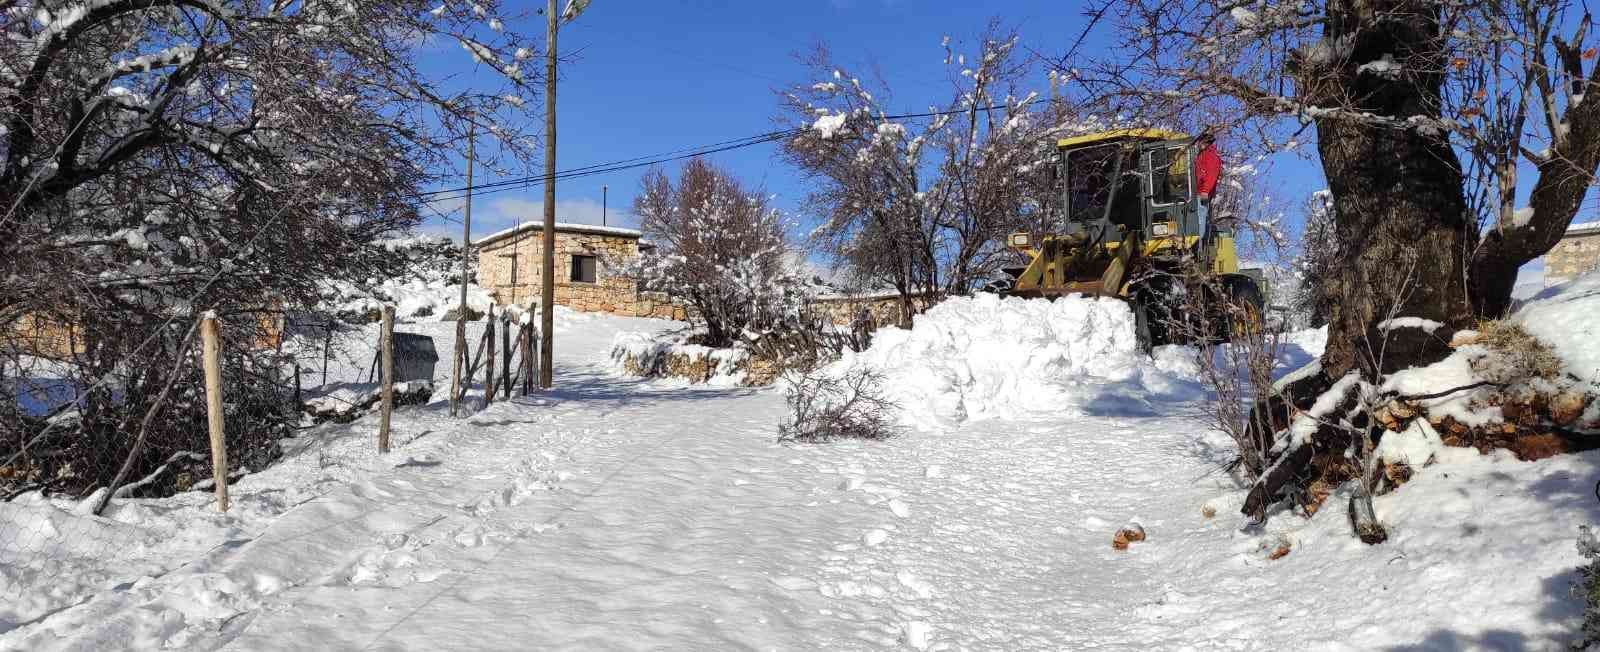 Mersin’in Yüksek Kesimlerinde Kar Yağışı Etkisini Gösteriyor